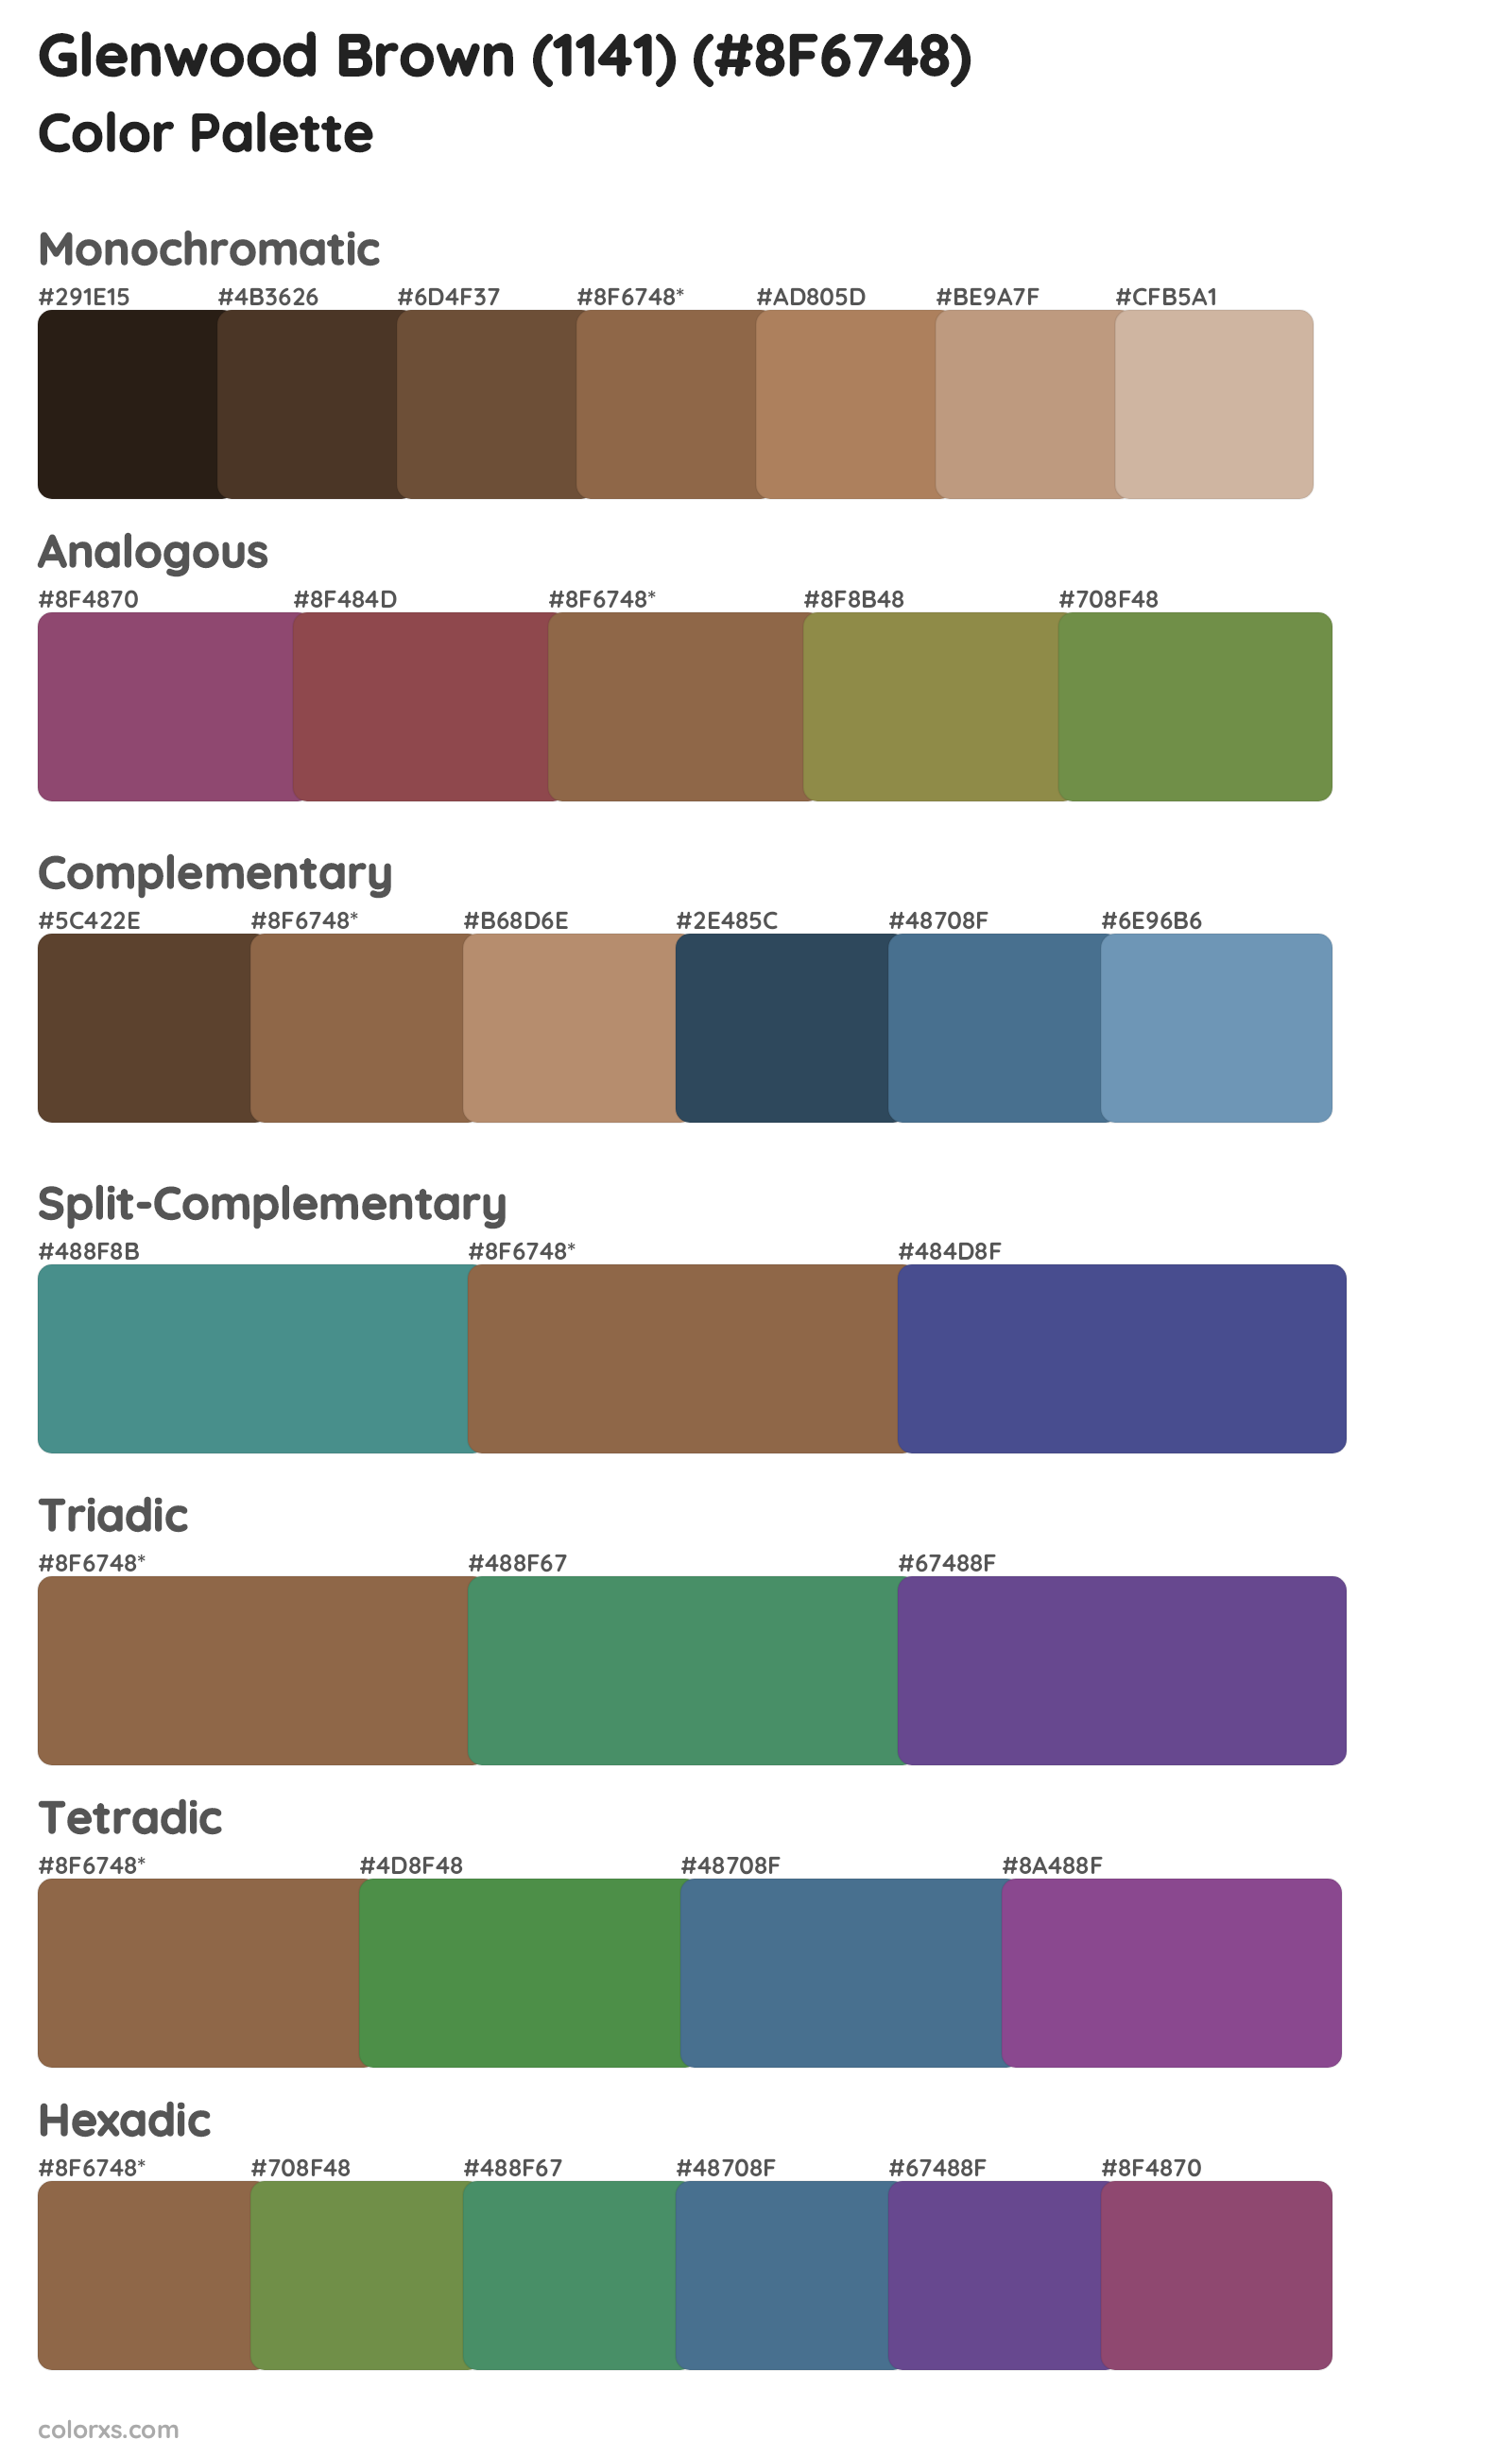 Glenwood Brown (1141) Color Scheme Palettes